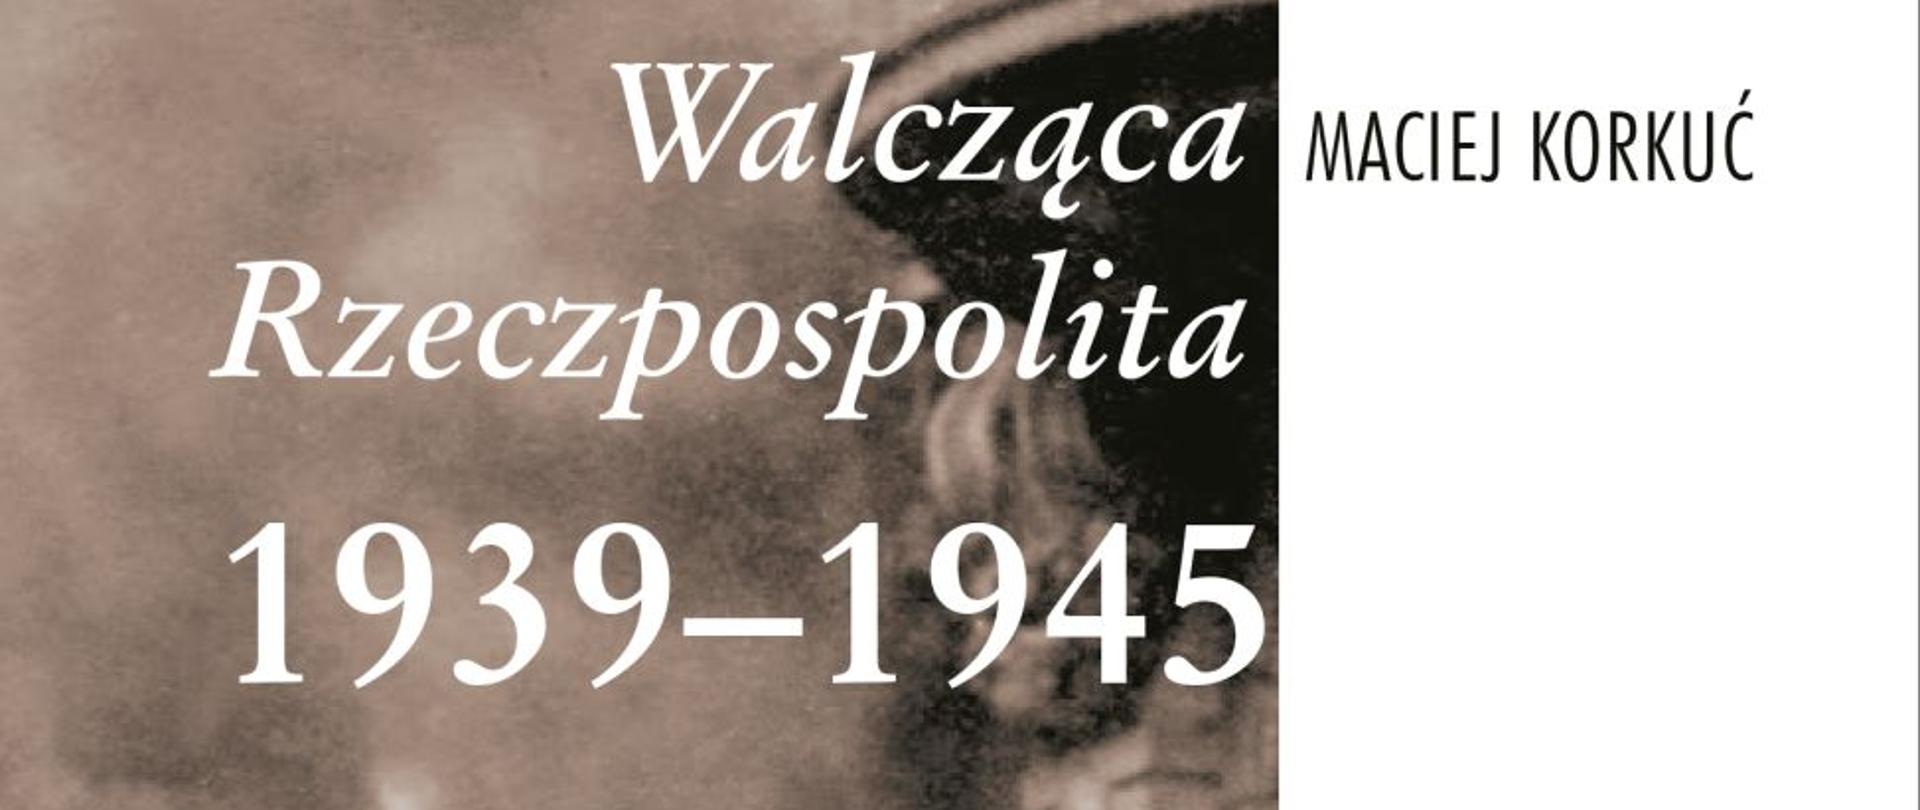 Maciej Korkuć, Walcząca Rzeczpospolita 1939–1945, Warszawa 2019, 144 s; ISBN: 978-83-8098-708-1.